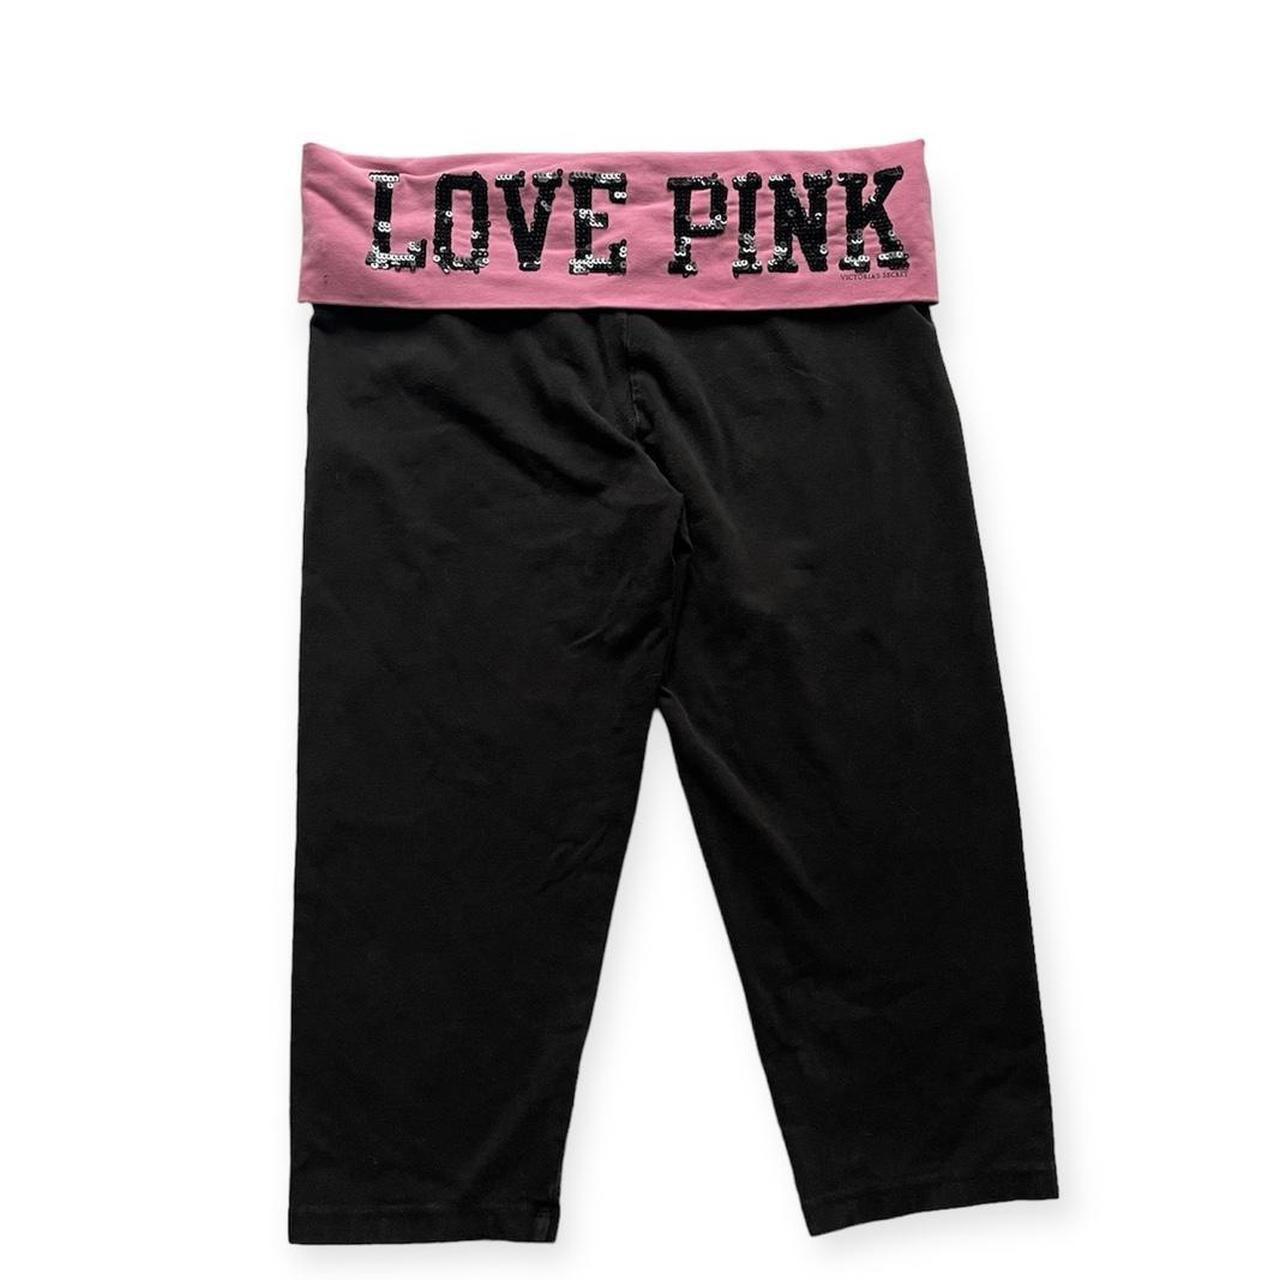 Victoria's Secret yoga pants, color: Ink Blot, Length: Short, Size